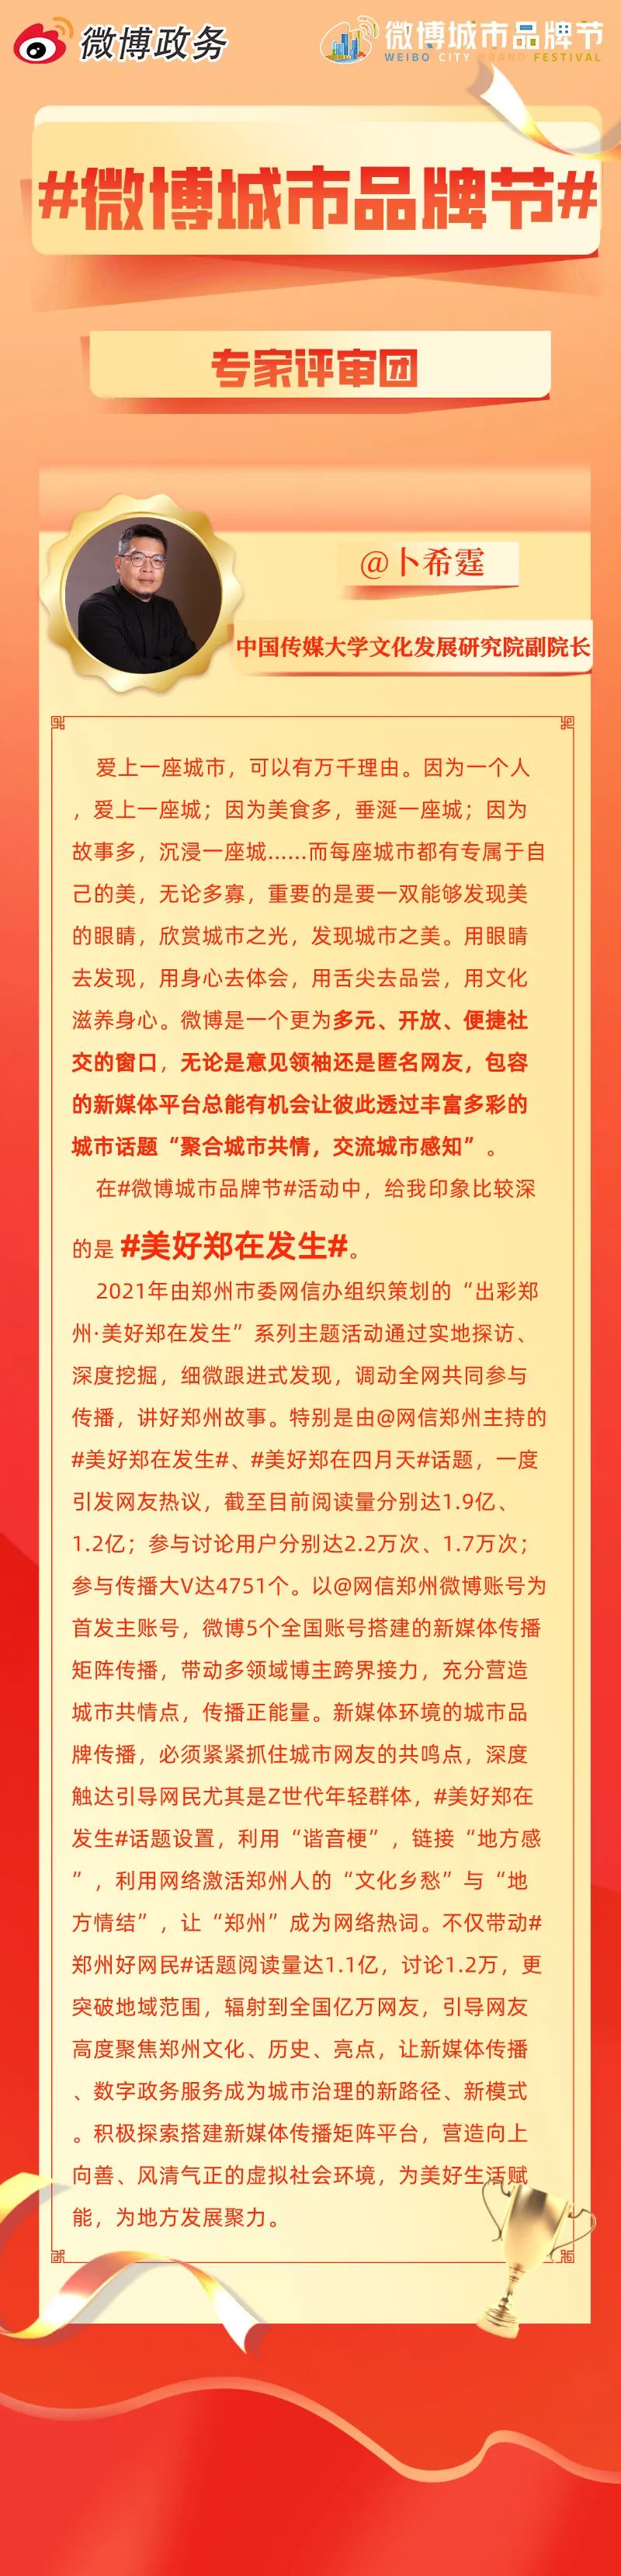 “网信郑州”#美好郑在发生#入选微博“2021年度最受欢迎城市活动TOP10”